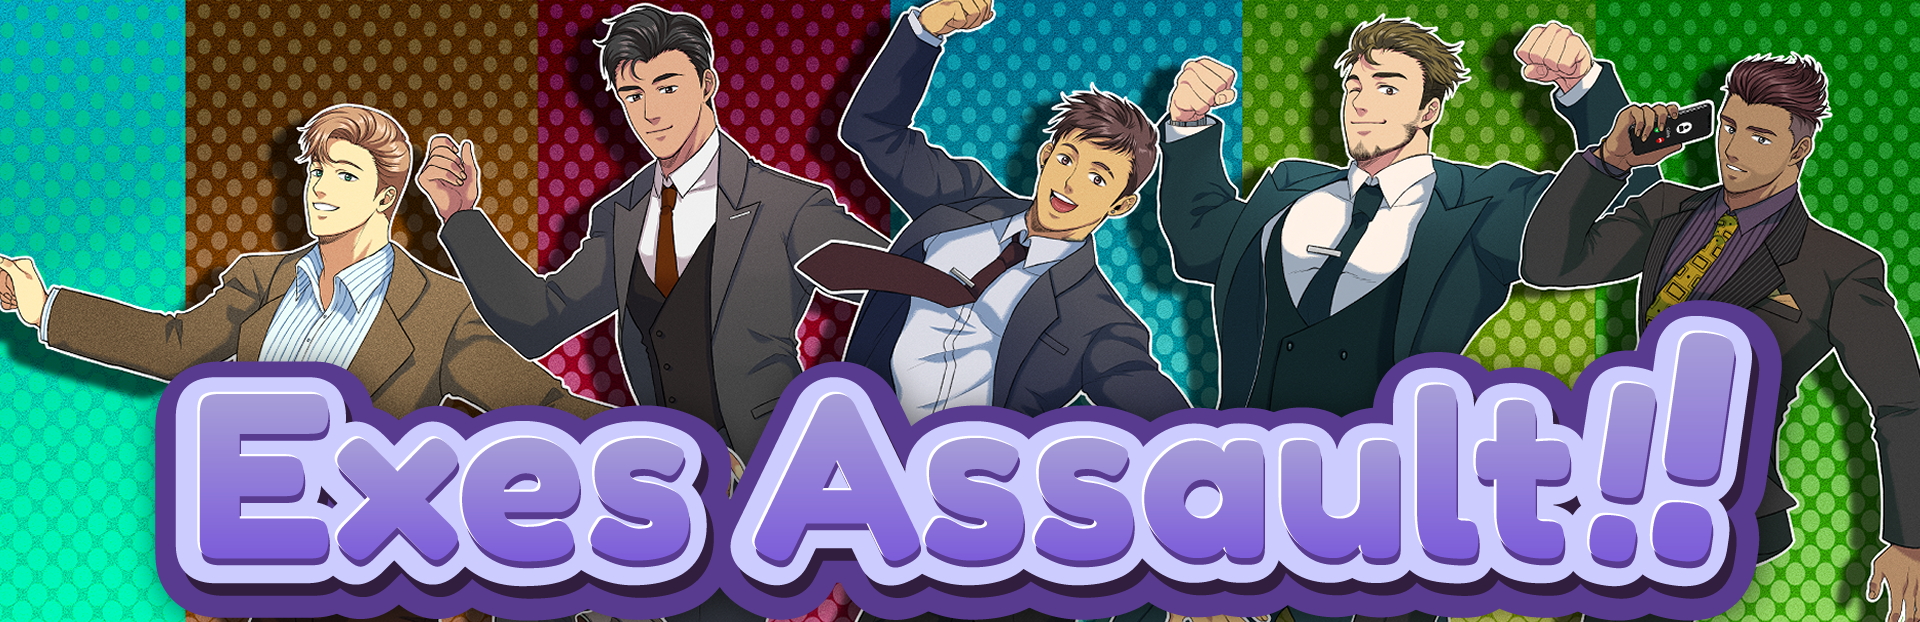 Exes Assault!! (SFW version)